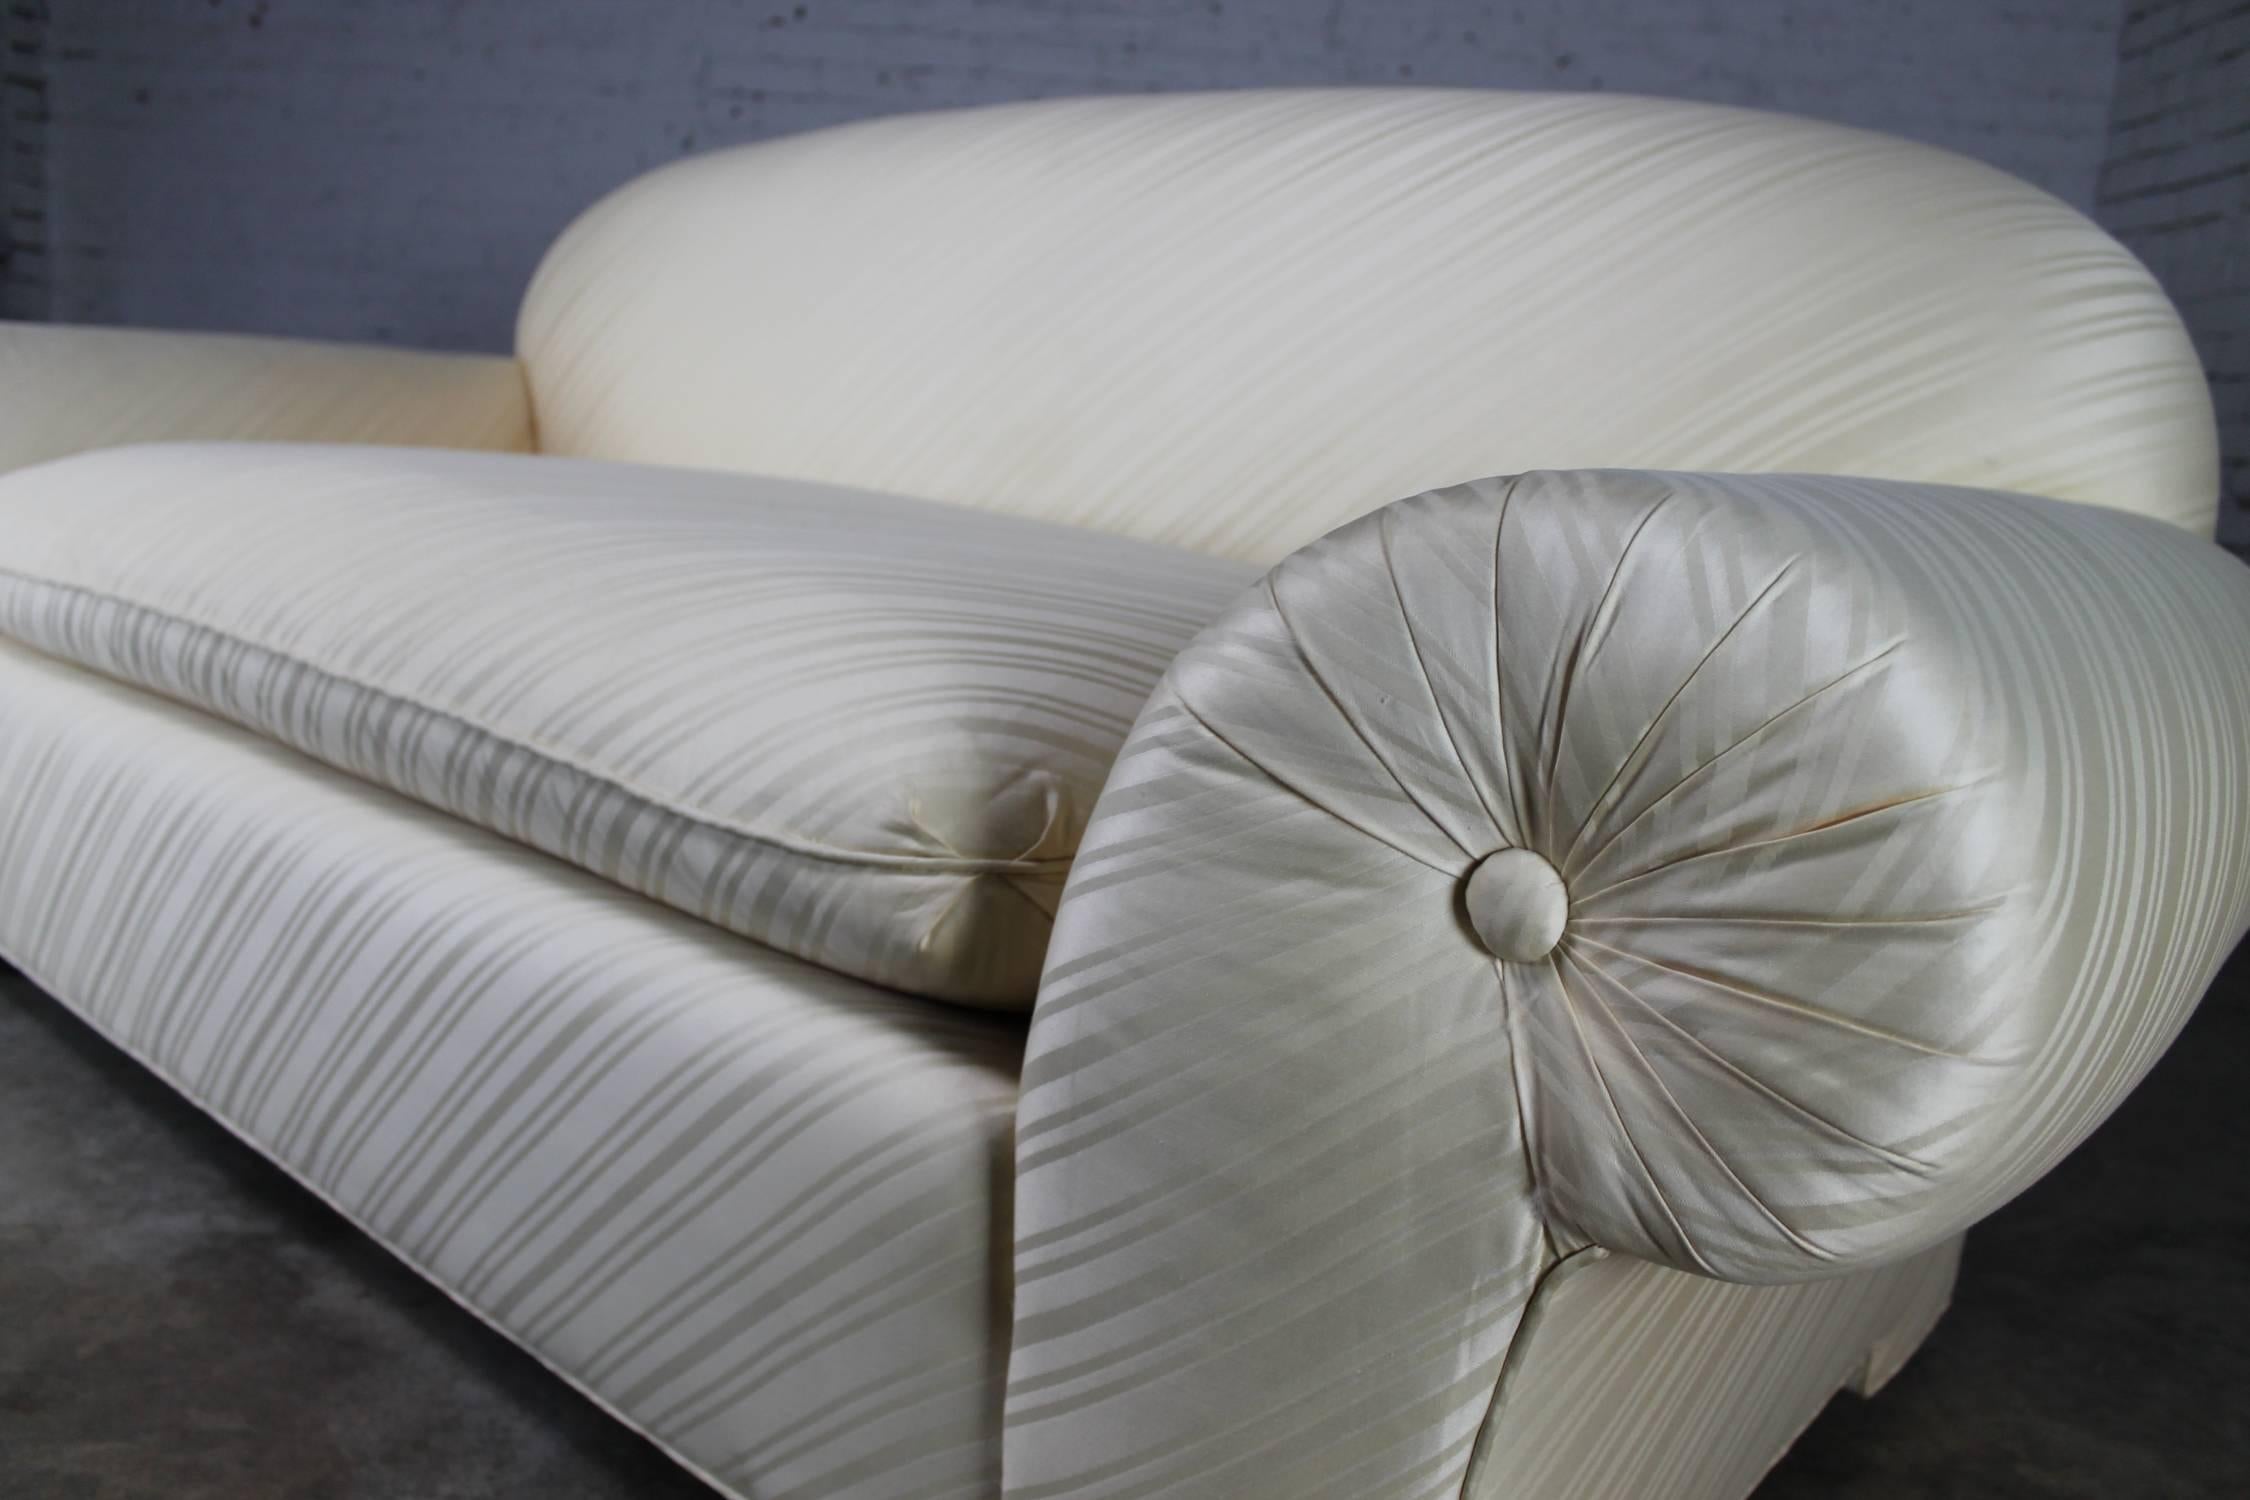 donghia curve sofa